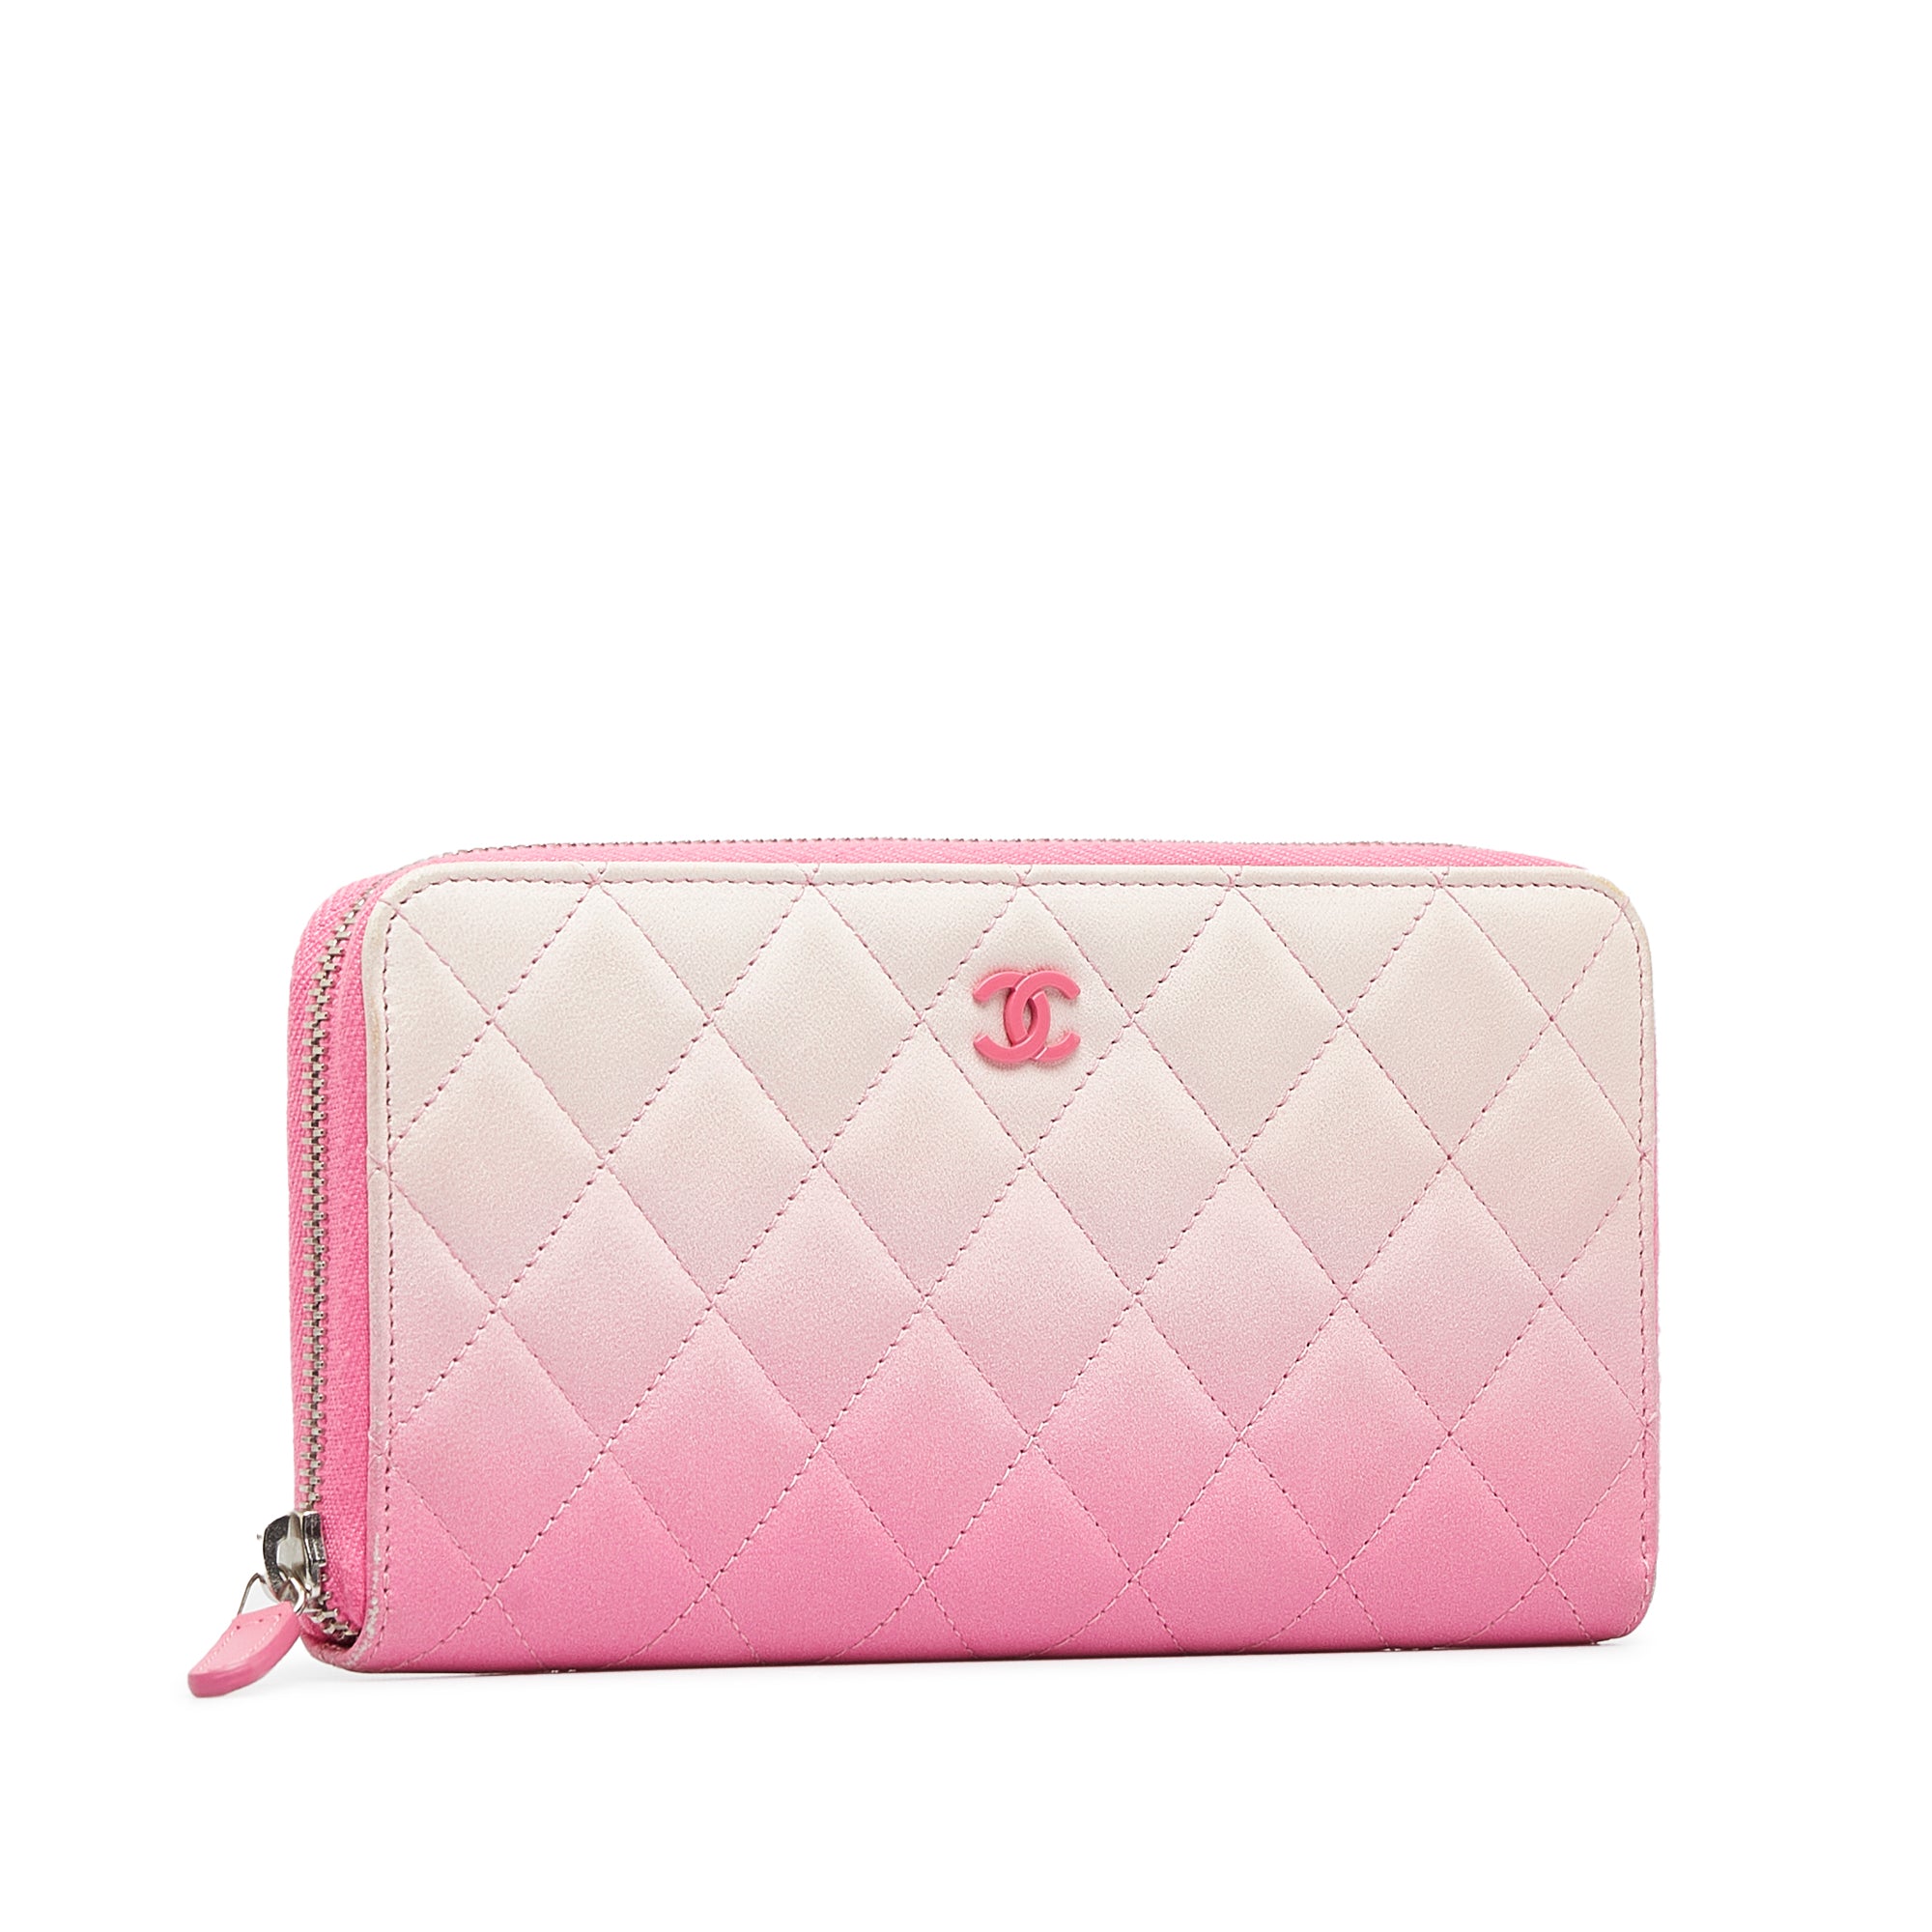 Chanel Women's Wallet - Pink